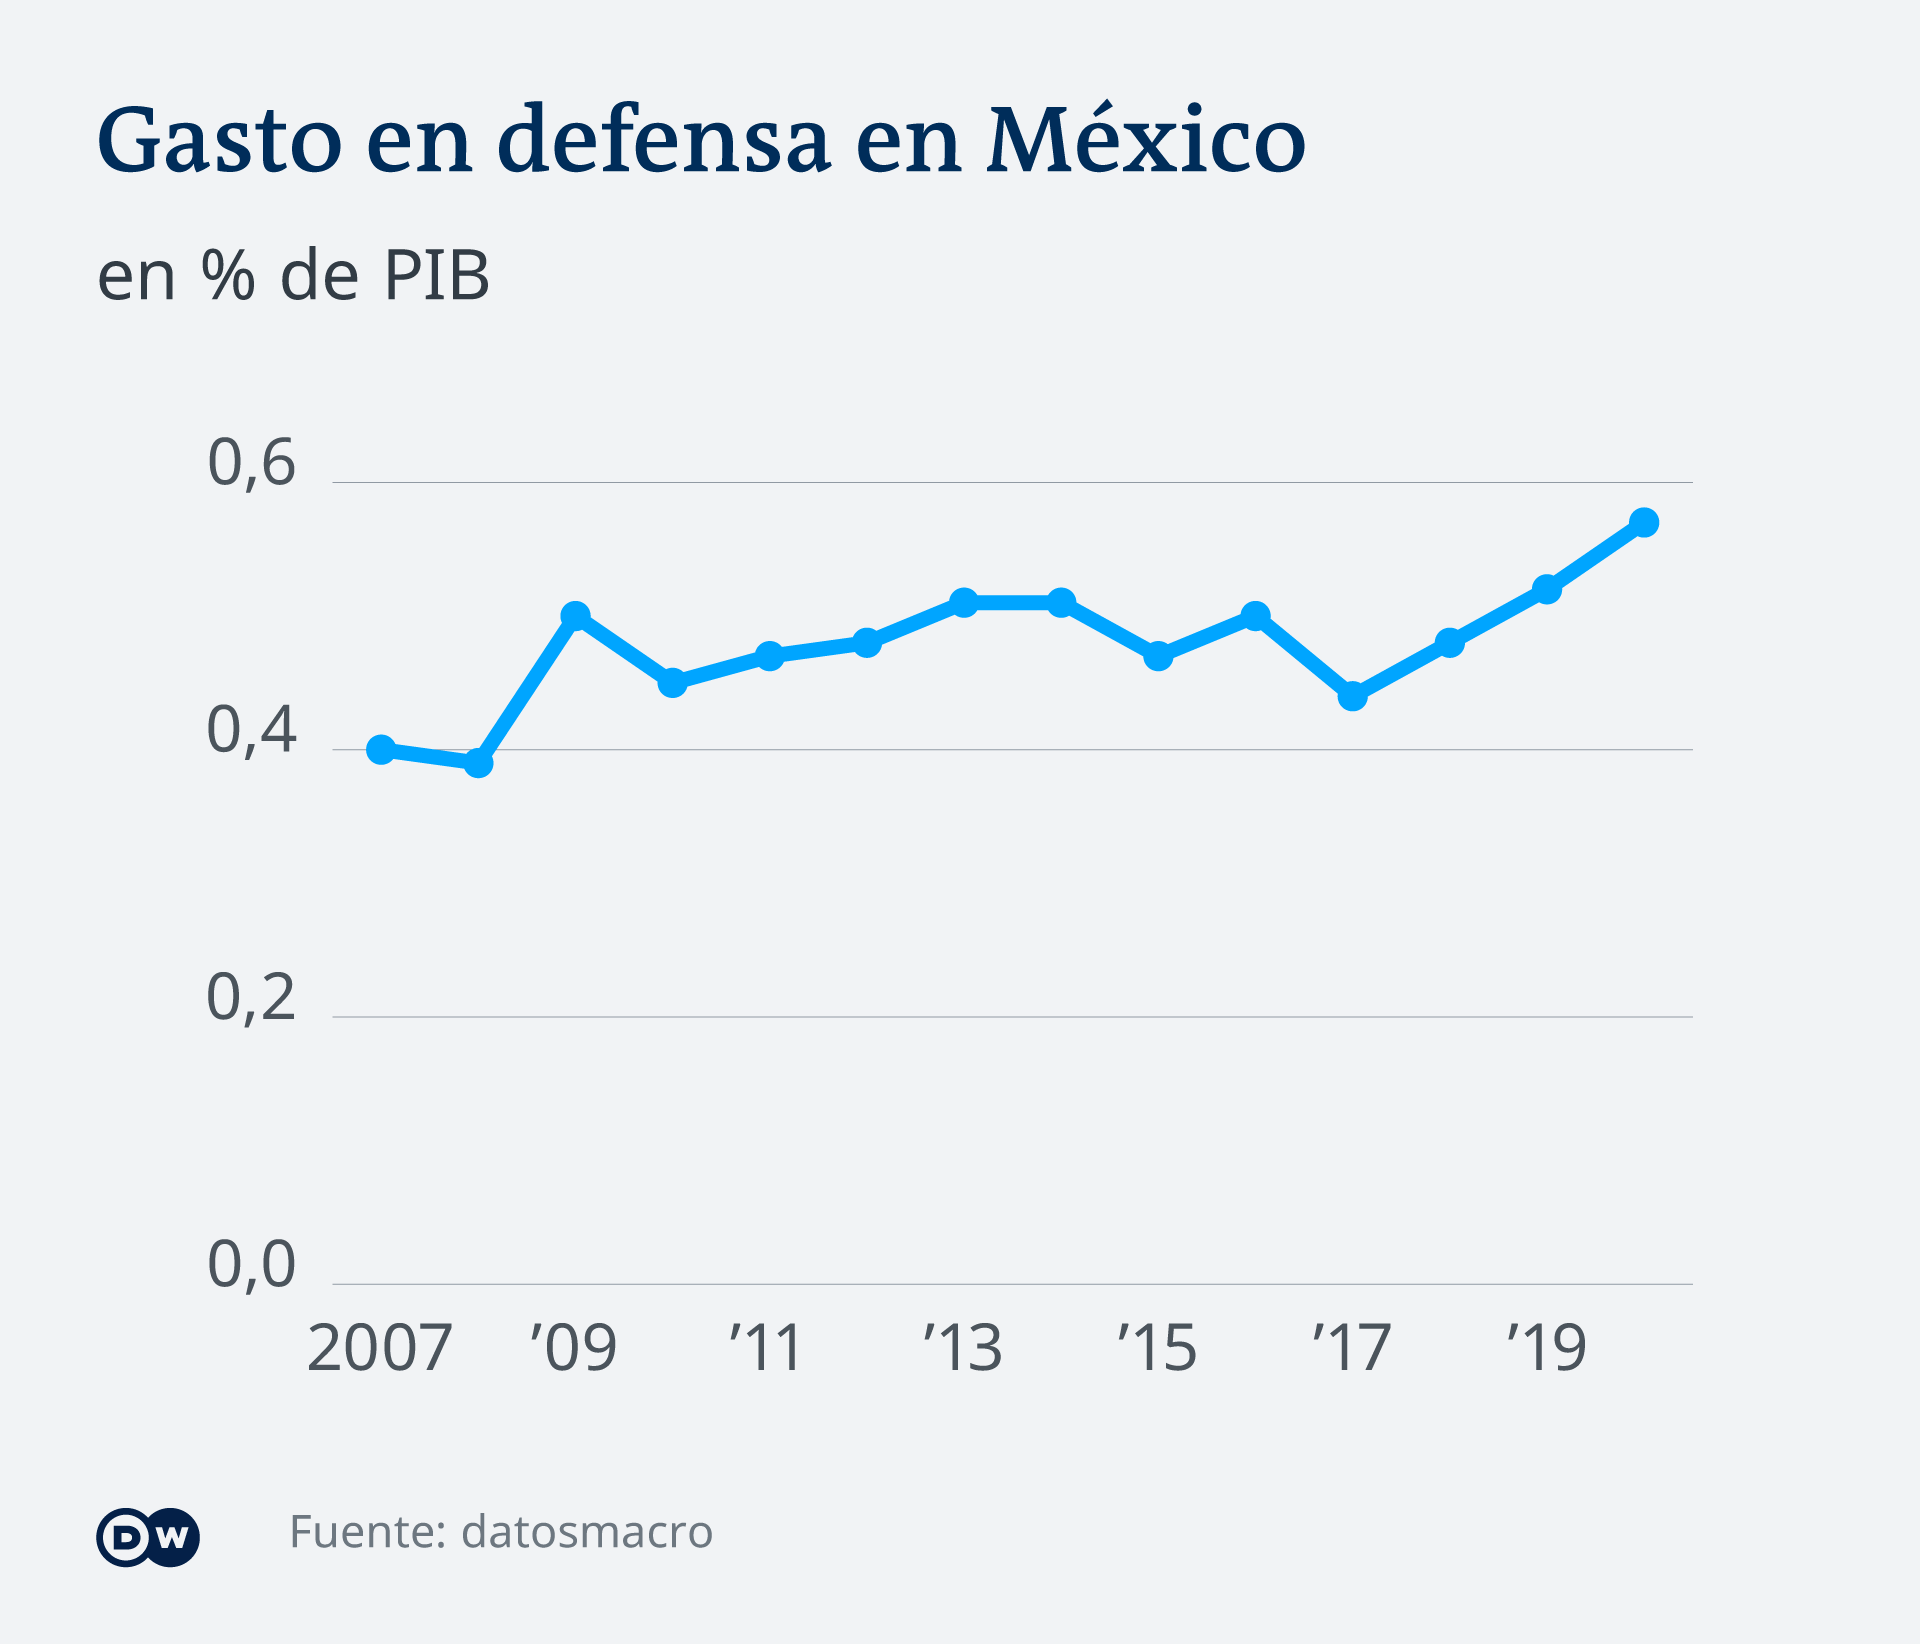 Infográfico gasto en defensa en México